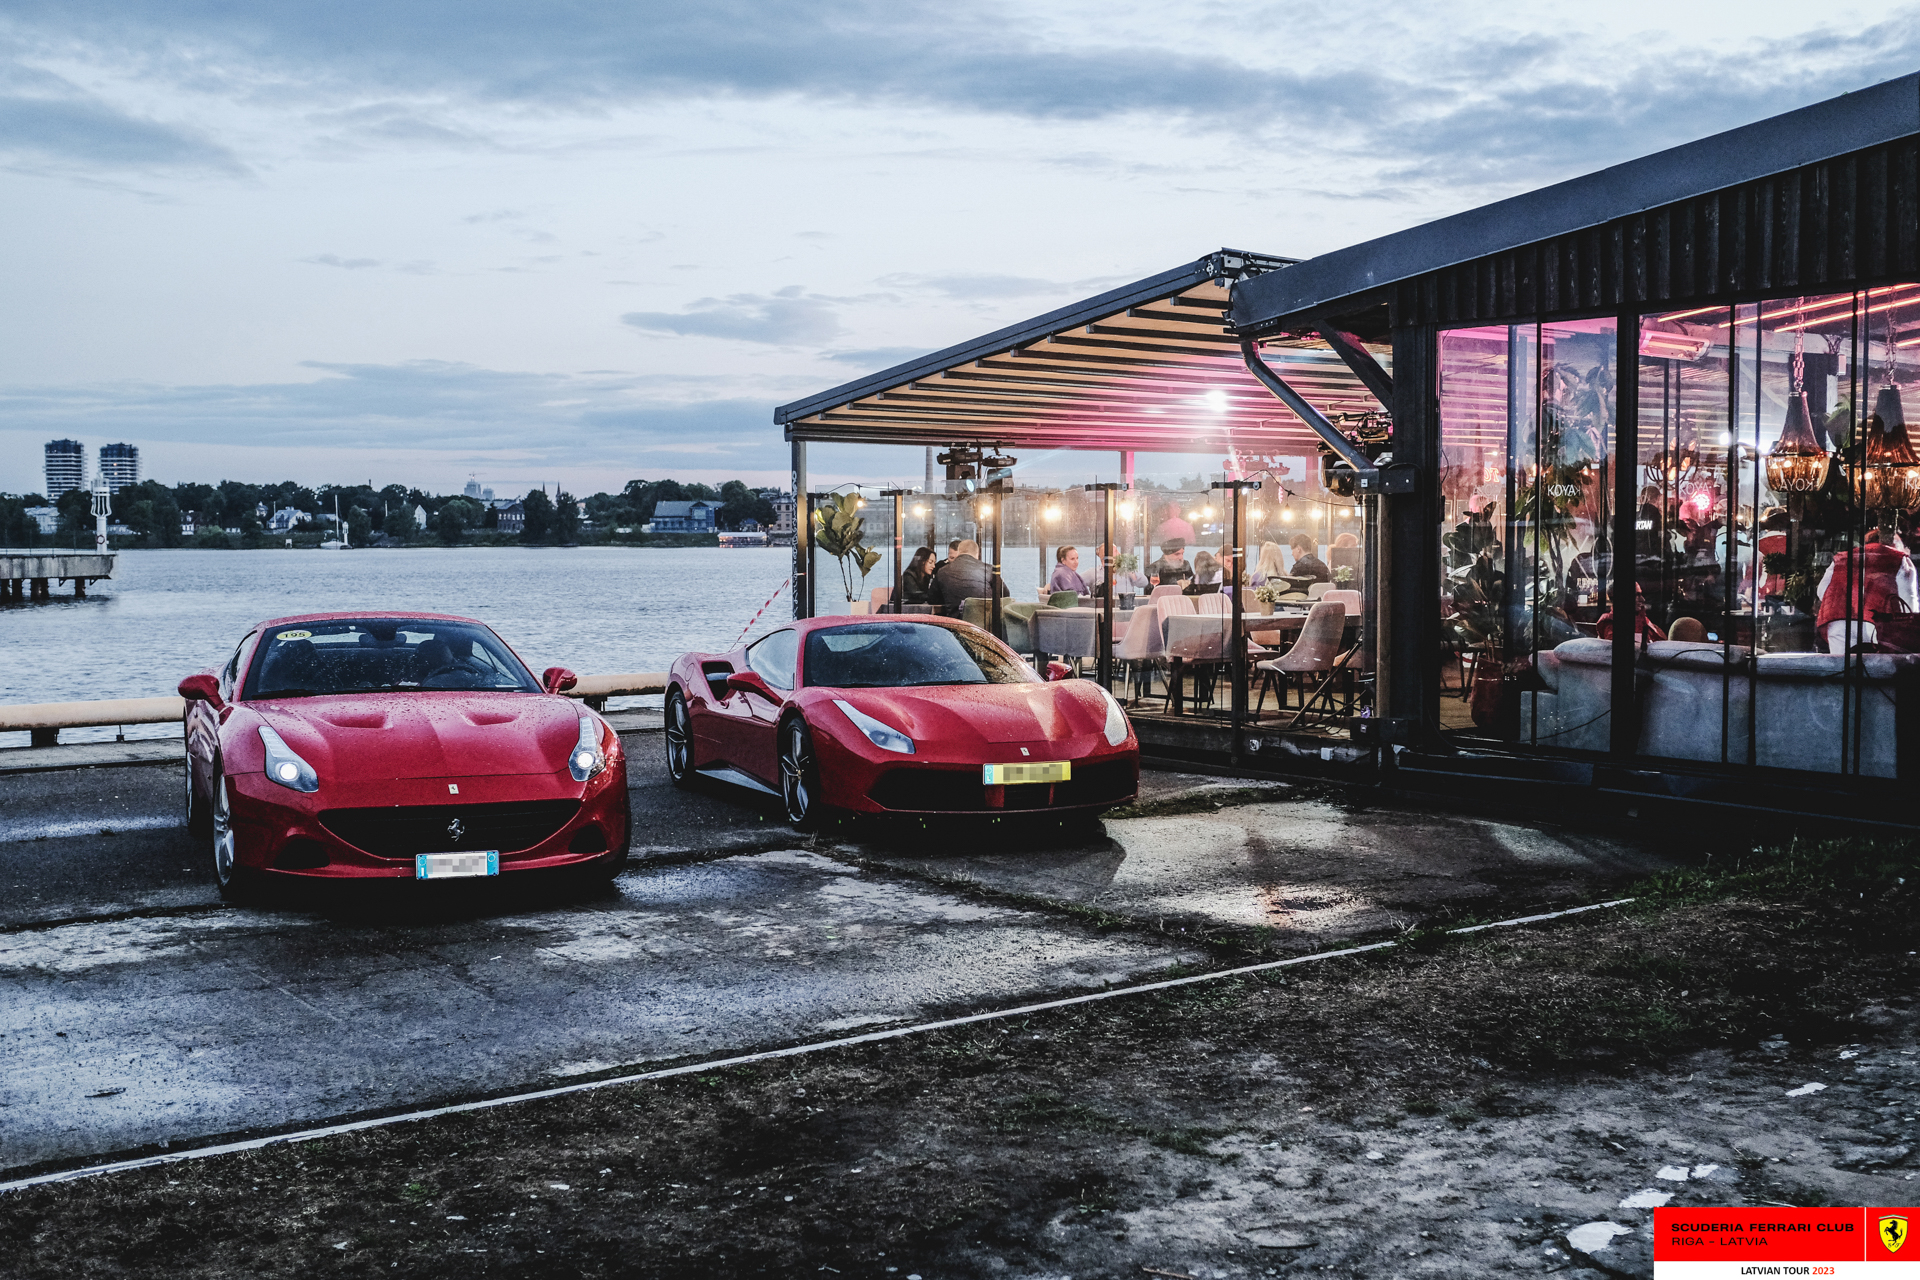 Ferraris parked in front of Koya. 